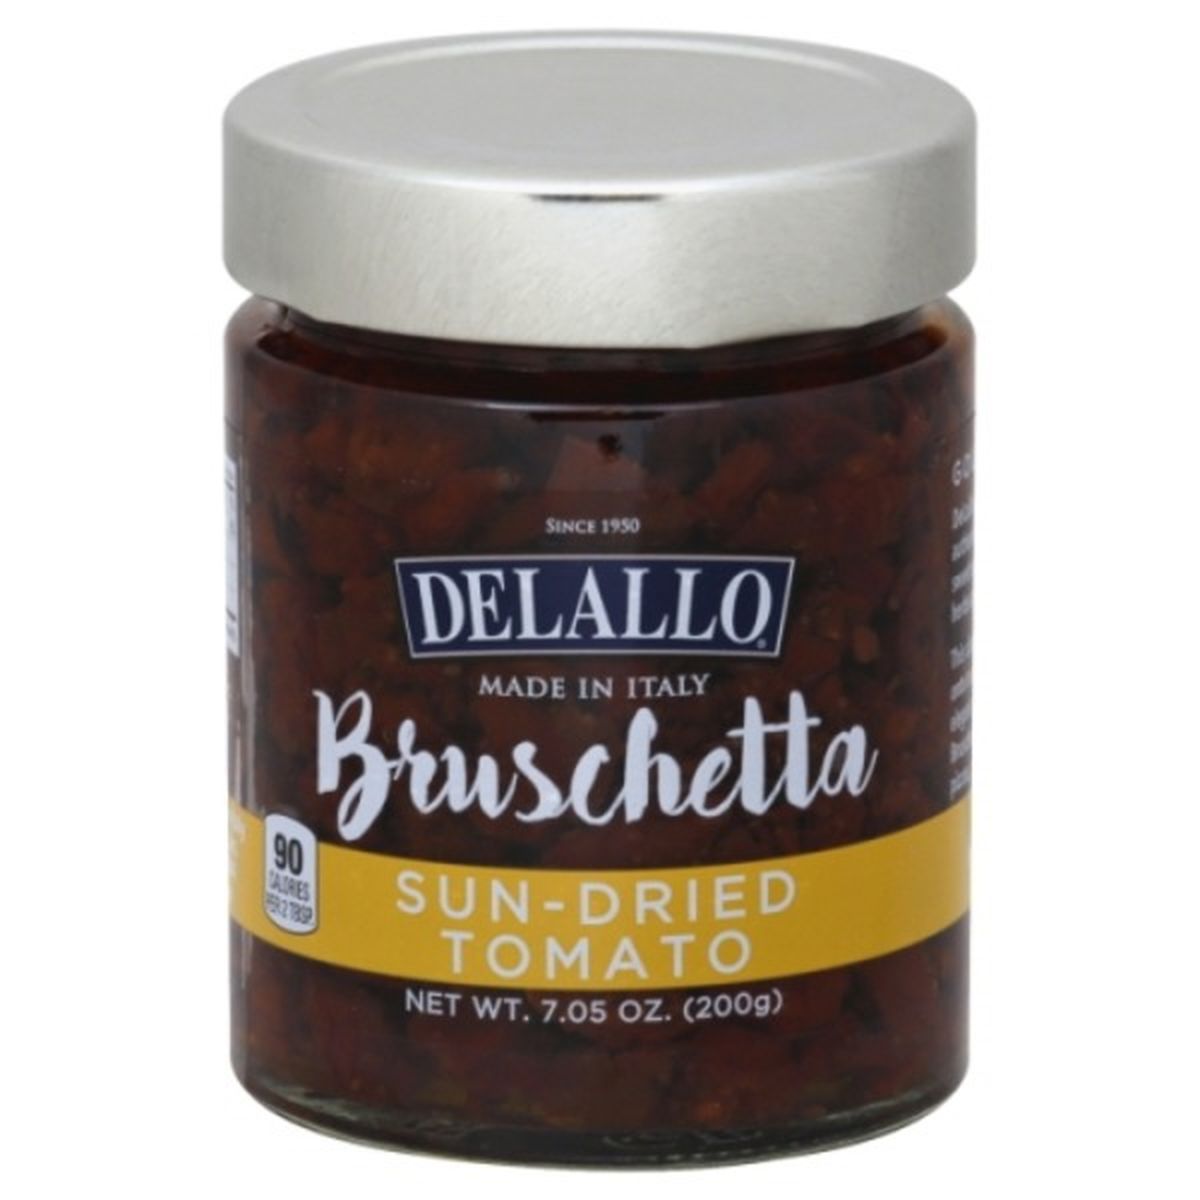 Calories in DeLallo Bruschetta, Sun-Dried Tomato